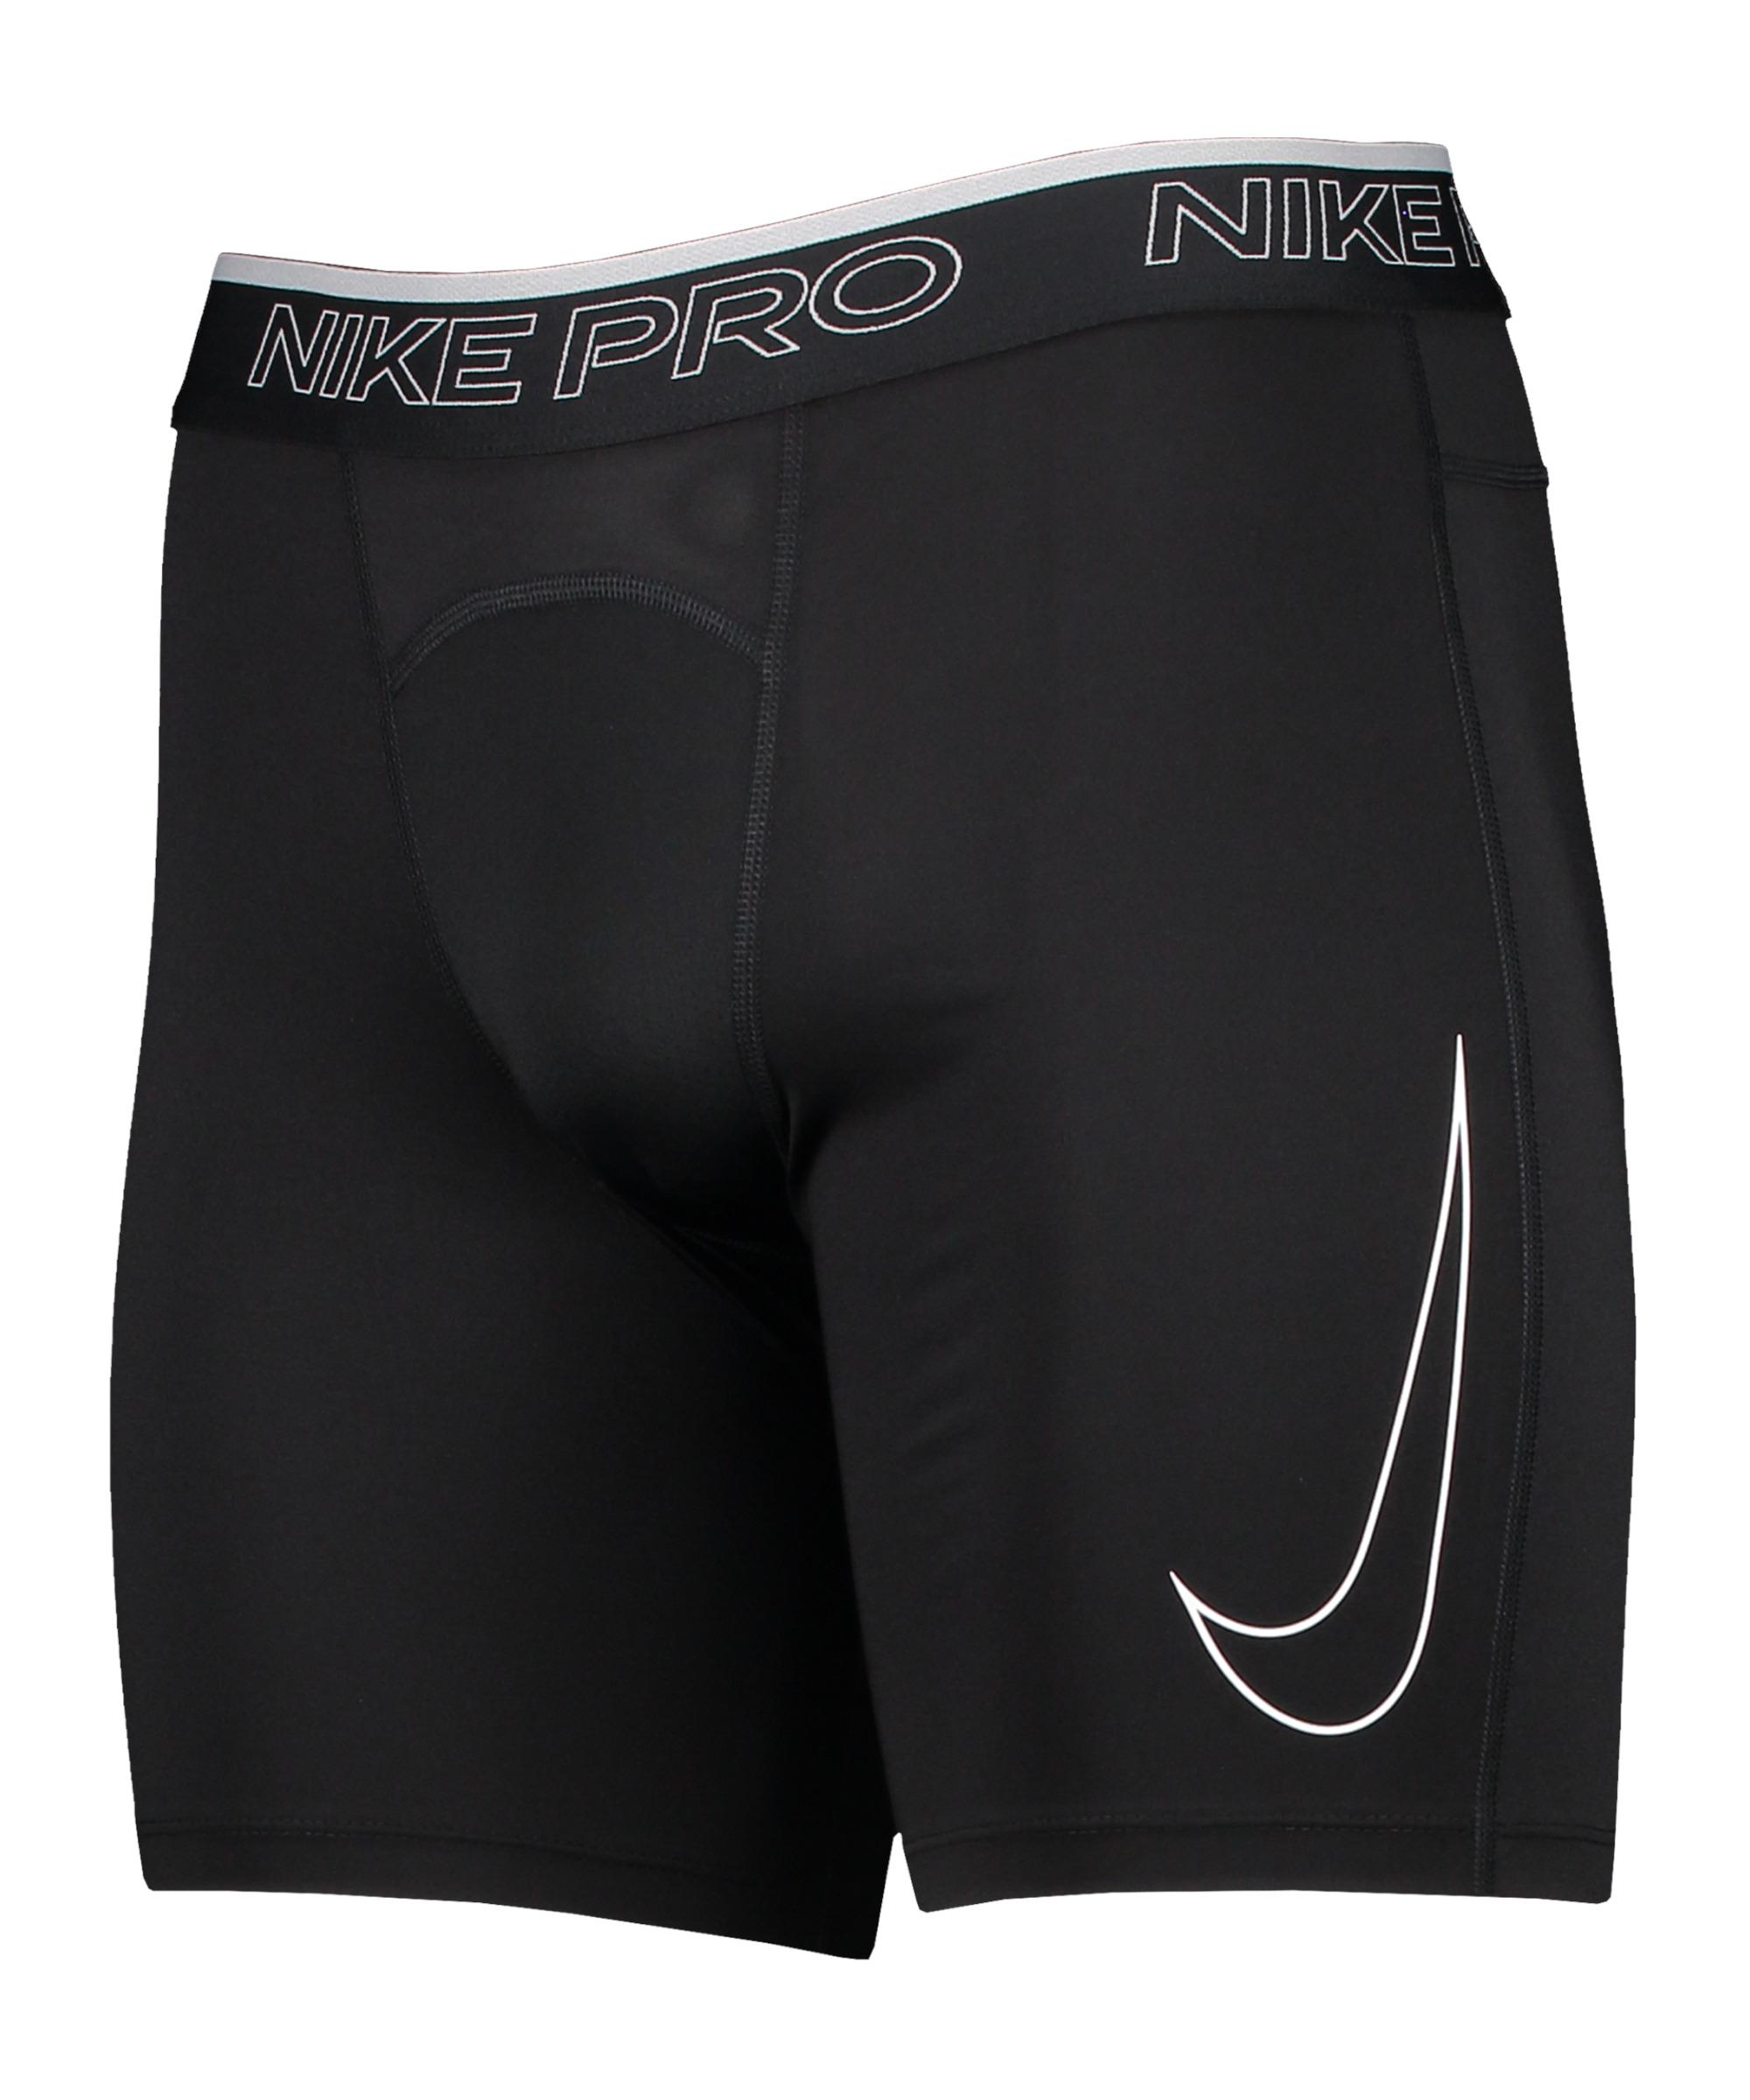 Nike Dri-Fit Pro Funktionsshorts Herren Online von im SportScheck black-white kaufen Shop